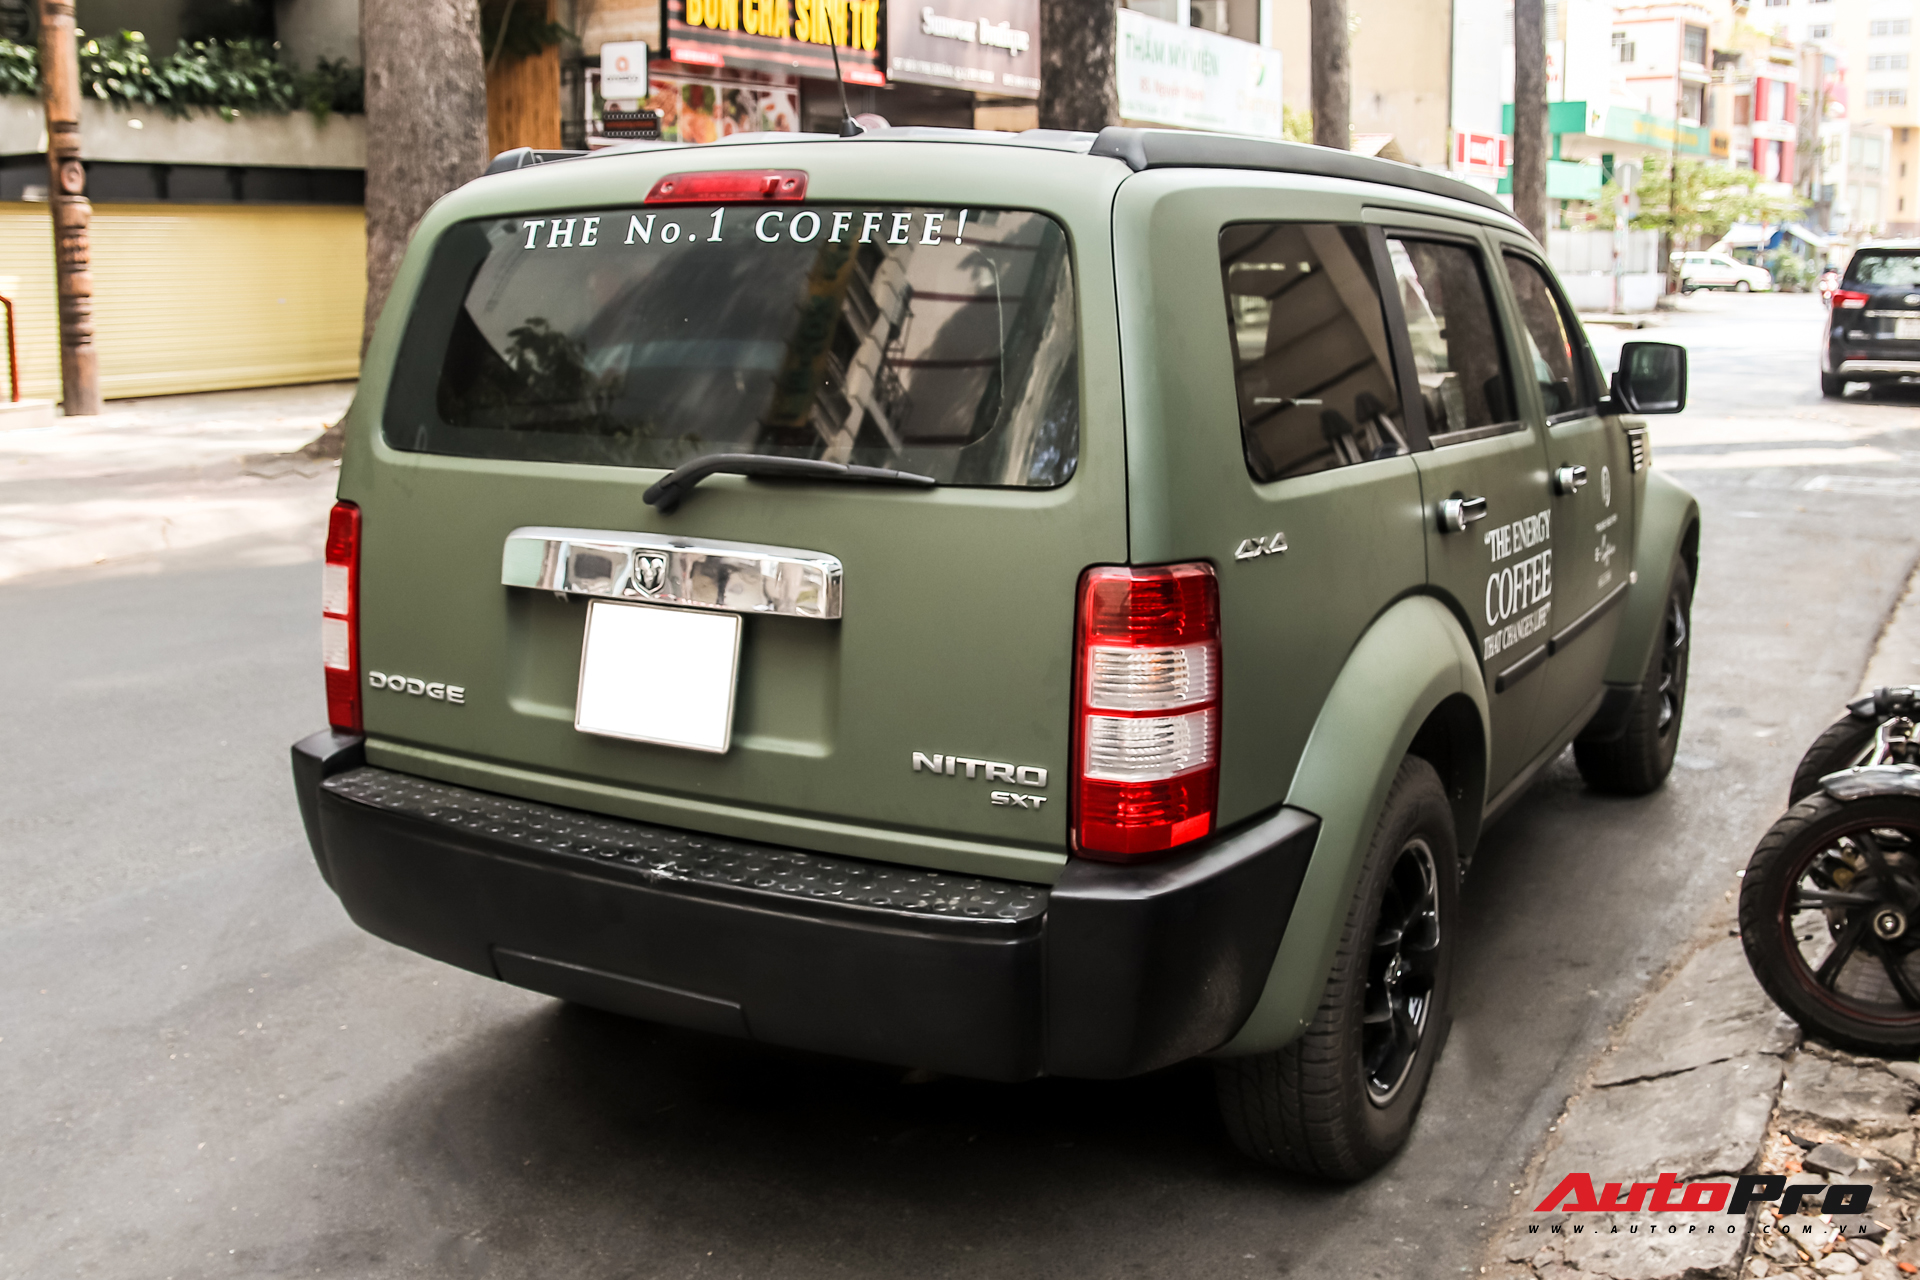 SUV địa hình Dodge hàng độc của ông Đặng Lê Nguyên Vũ bất ngờ xuất hiện trên phố Sài Gòn - Ảnh 5.